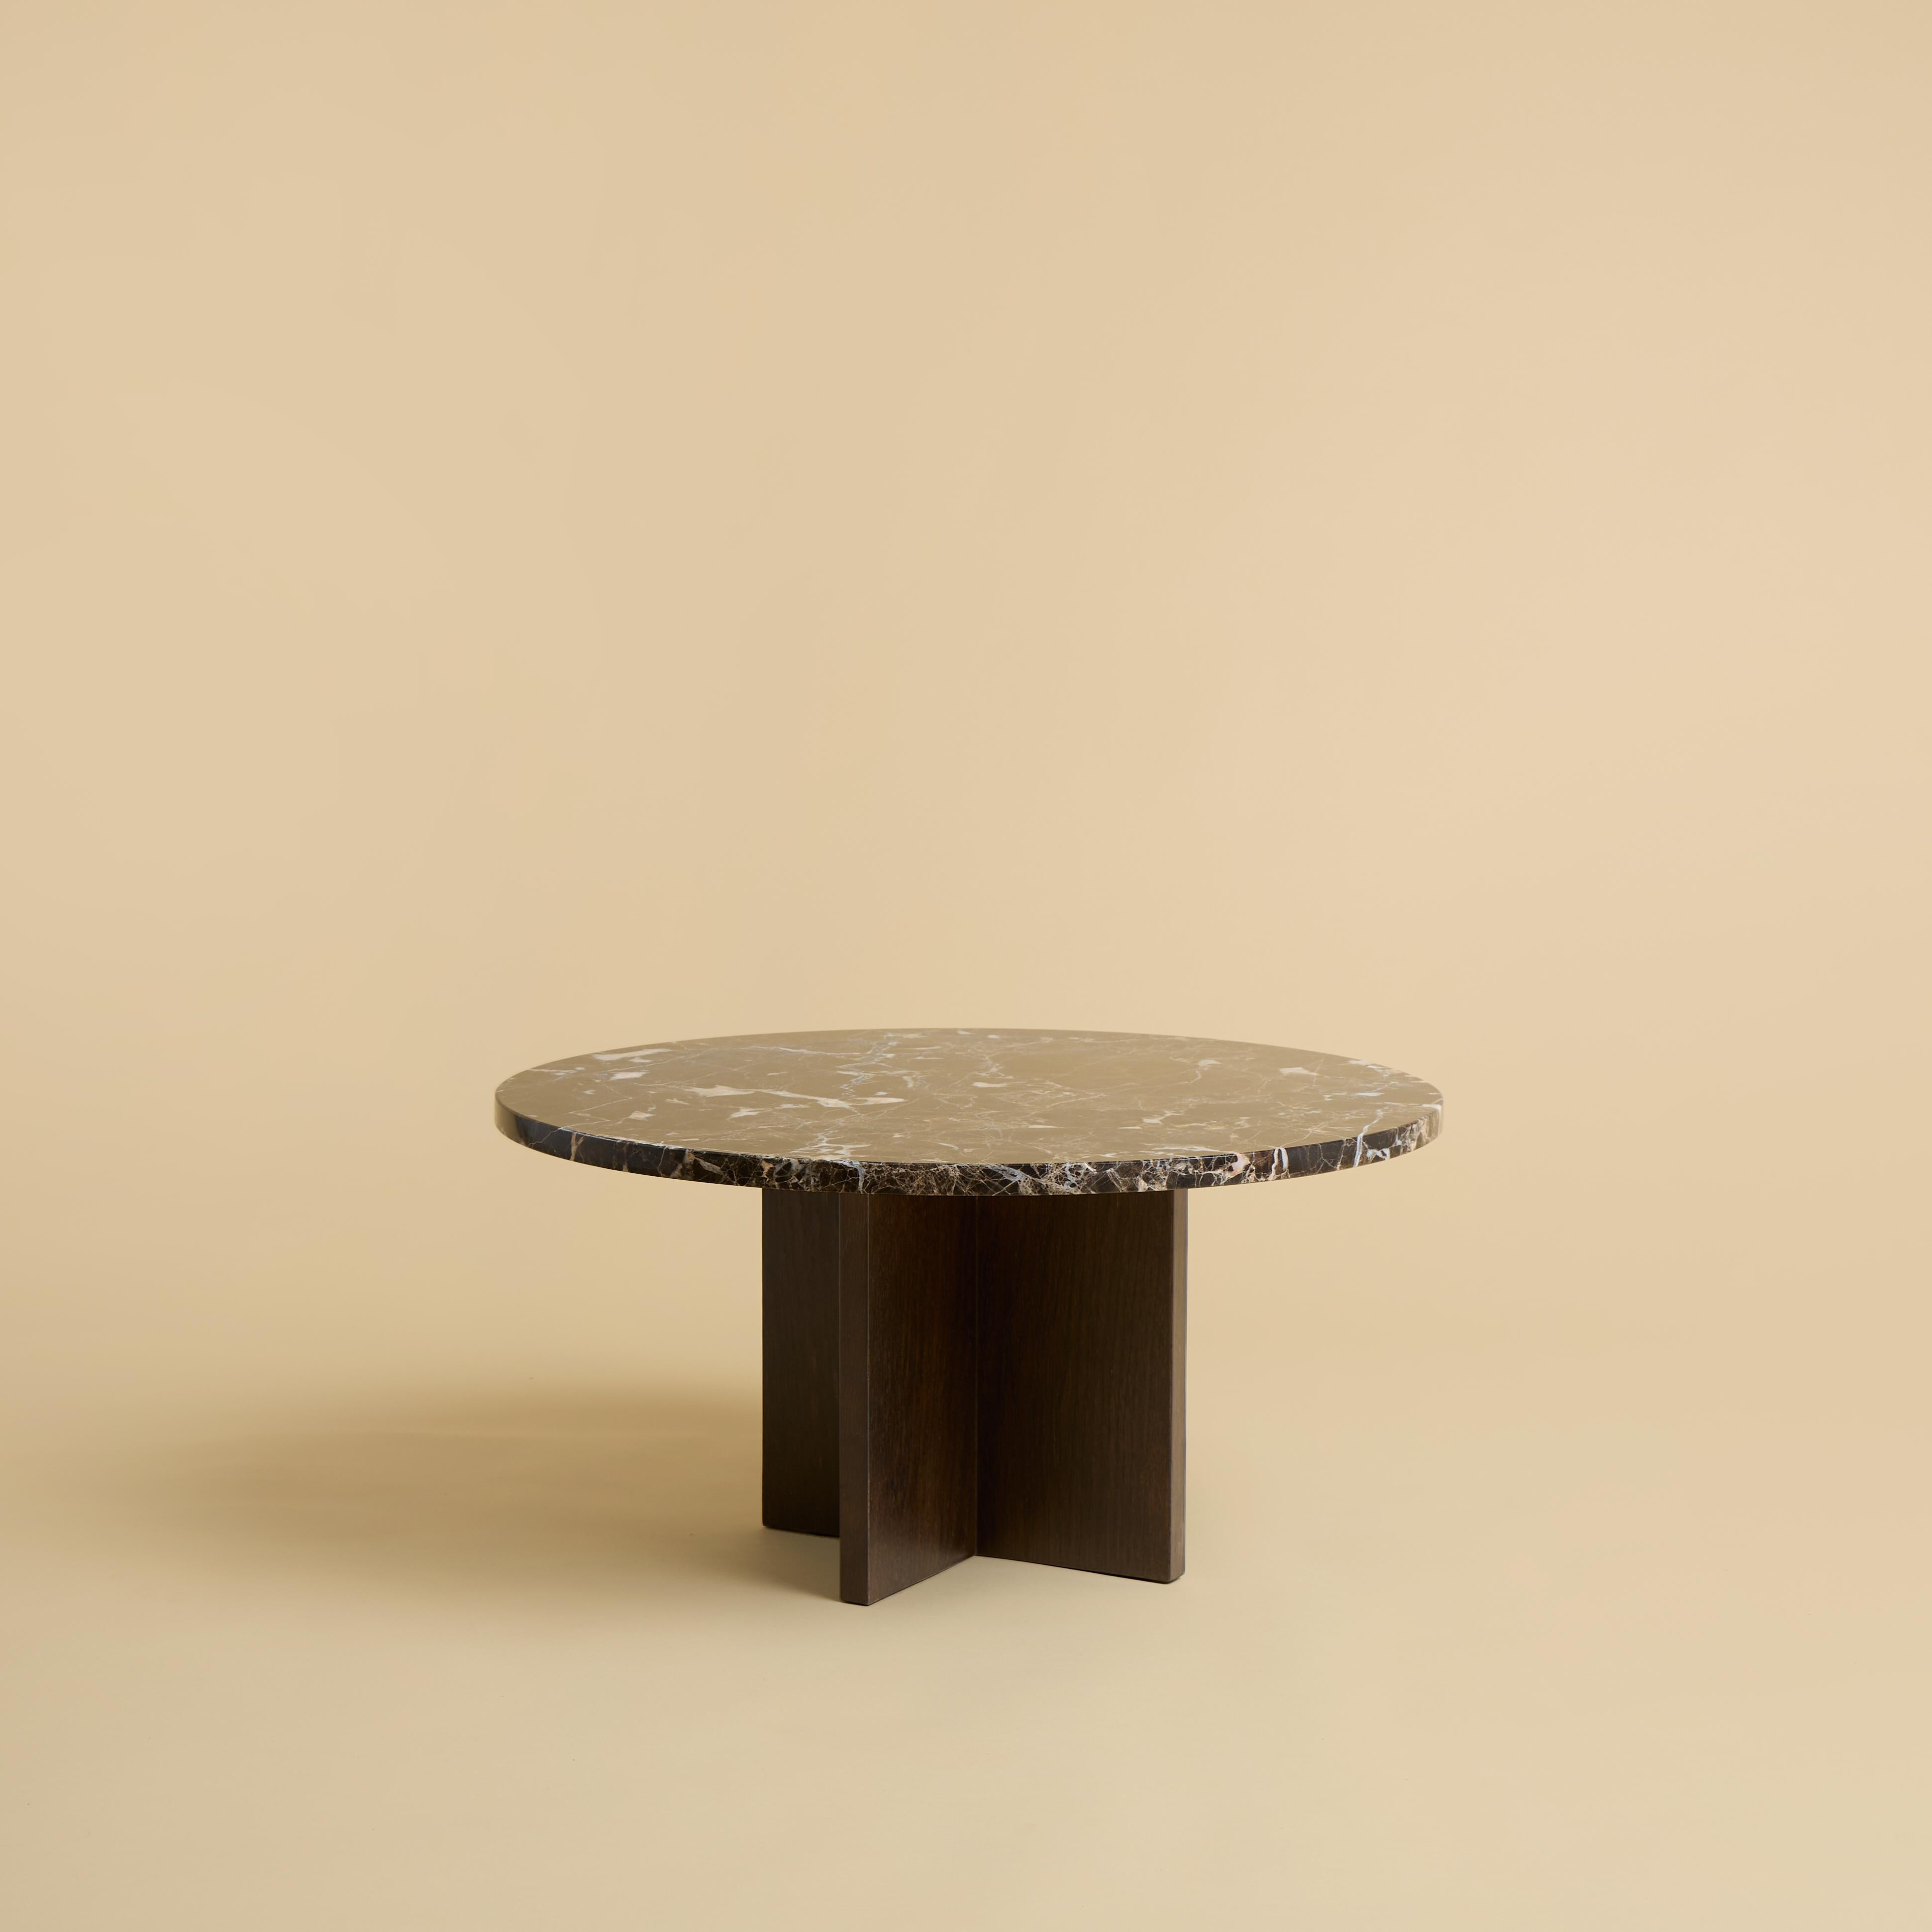 Der Couchtisch Tinian wird mit einem Untergestell aus Eichenholz und einer Platte aus Marmor Emperador Dark hergestellt. Die Platte ist kreisförmig und hat einen Durchmesser von 60 cm, während der Sockel aus rechtwinklig zueinander verleimten